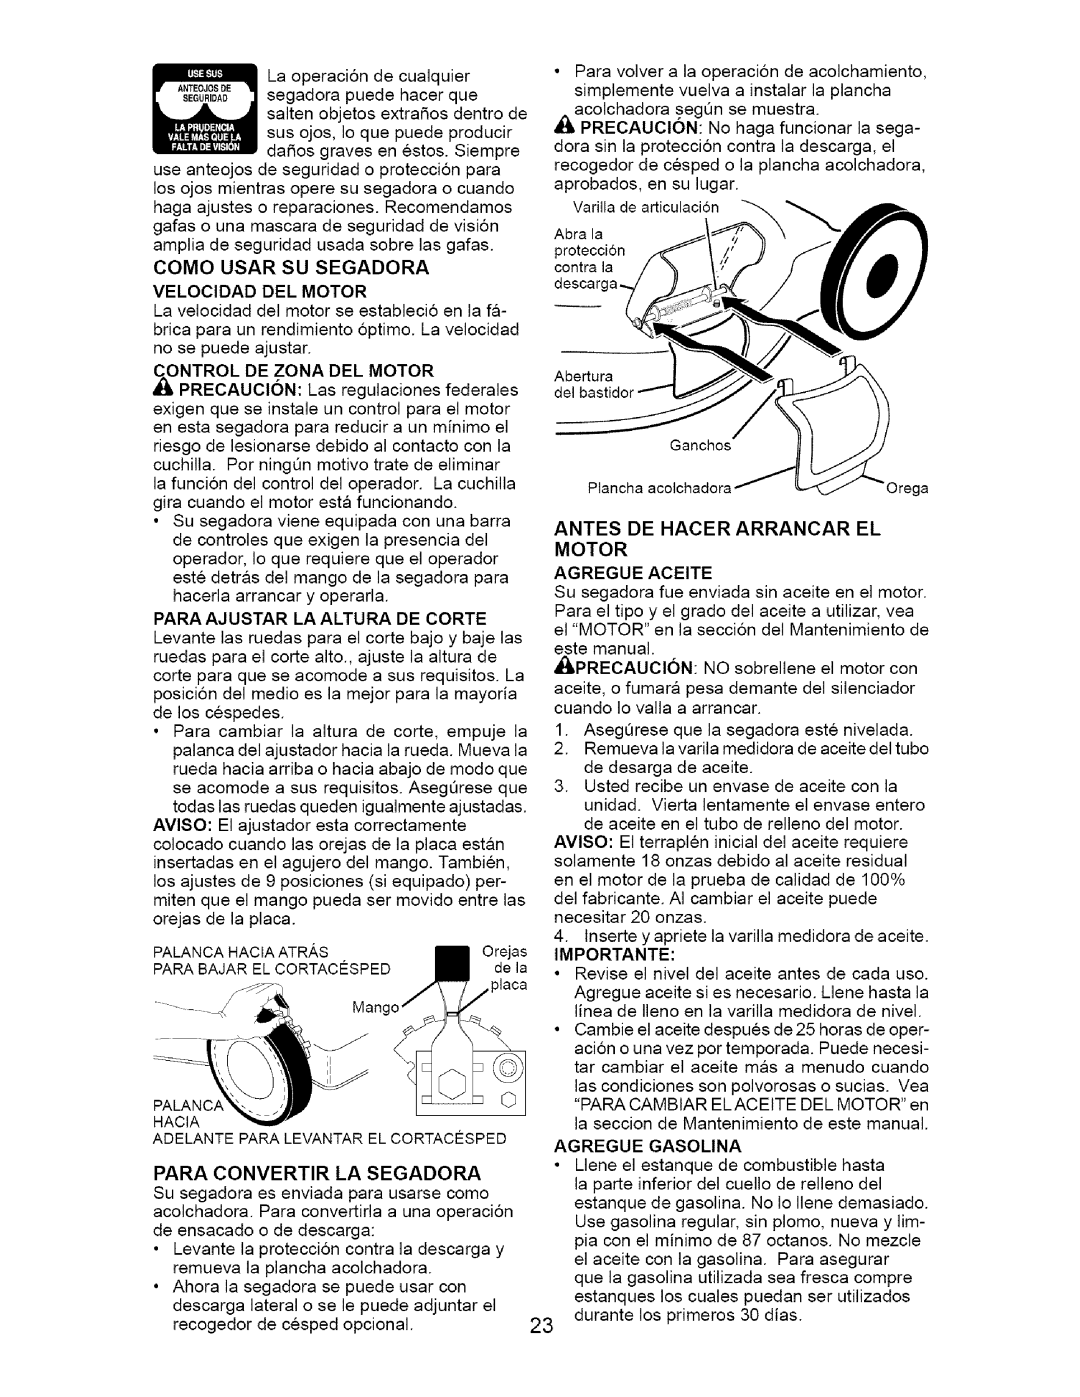 Craftsman 917.385122 manual Como Usar Su Segadora Velocidad Del Motor, Antes De Hacer Arrancar El Motor Agregue Aceite 